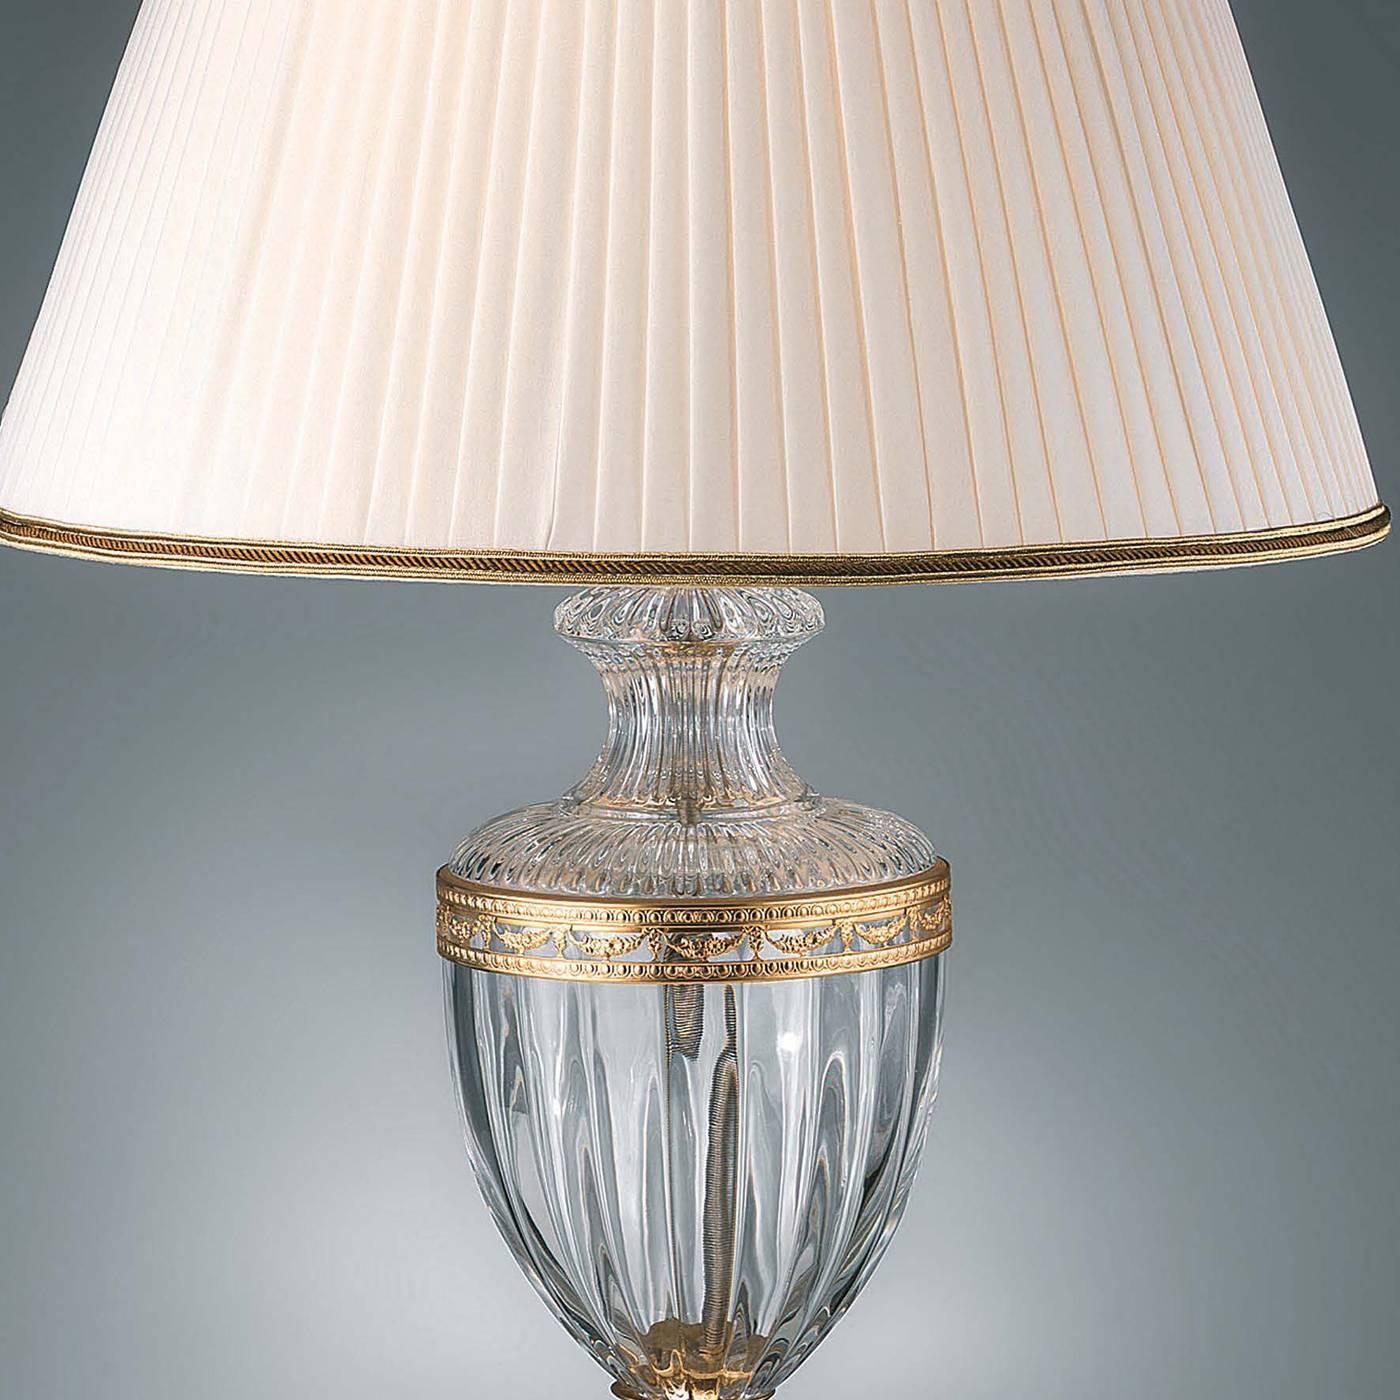 Diese Lampe, die für die Kommode gedacht ist, verleiht jedem Zuhause einen Hauch von Luxus. Der Lampenkörper in klarem Kristall ist mit Akzenten und einem Sockel aus 24 Karat vergoldetem Messing verziert. Der elegante weiße Lampenschirm hat unten